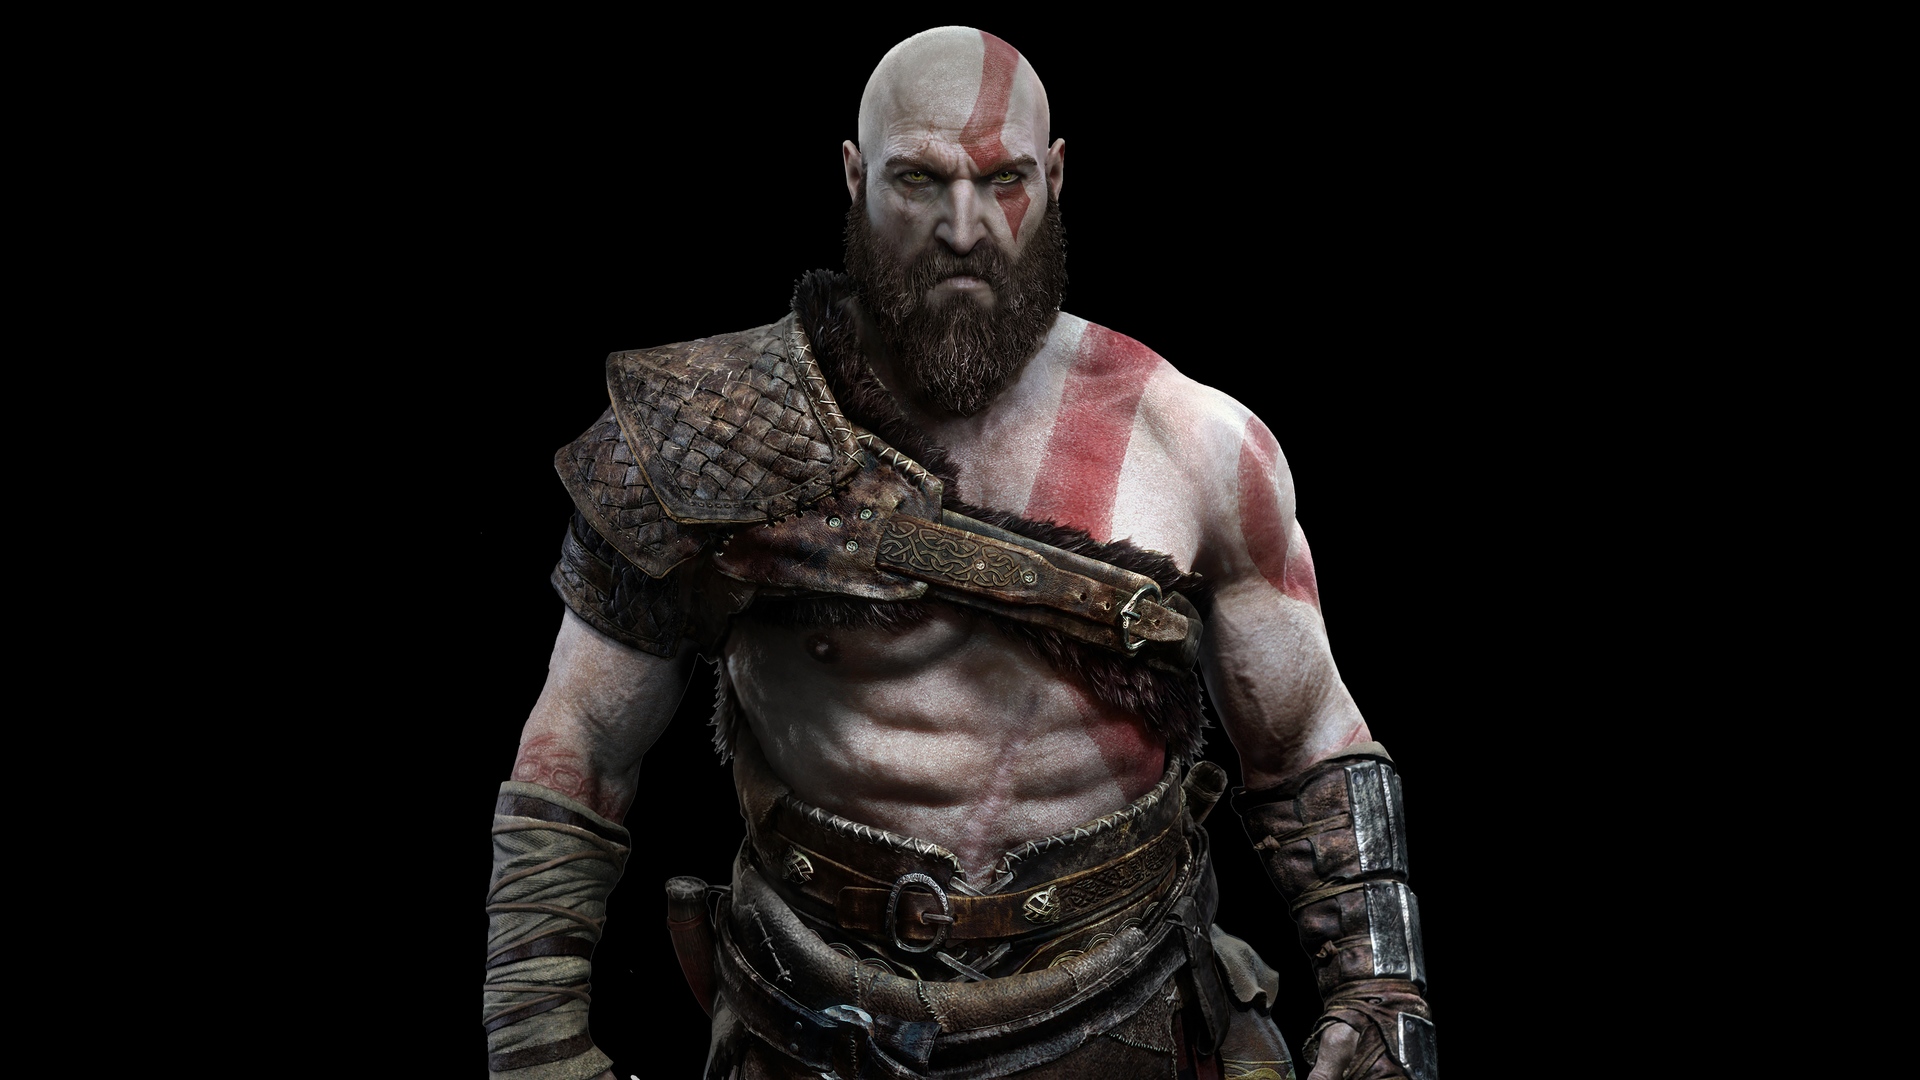 download free kratos god of war 3